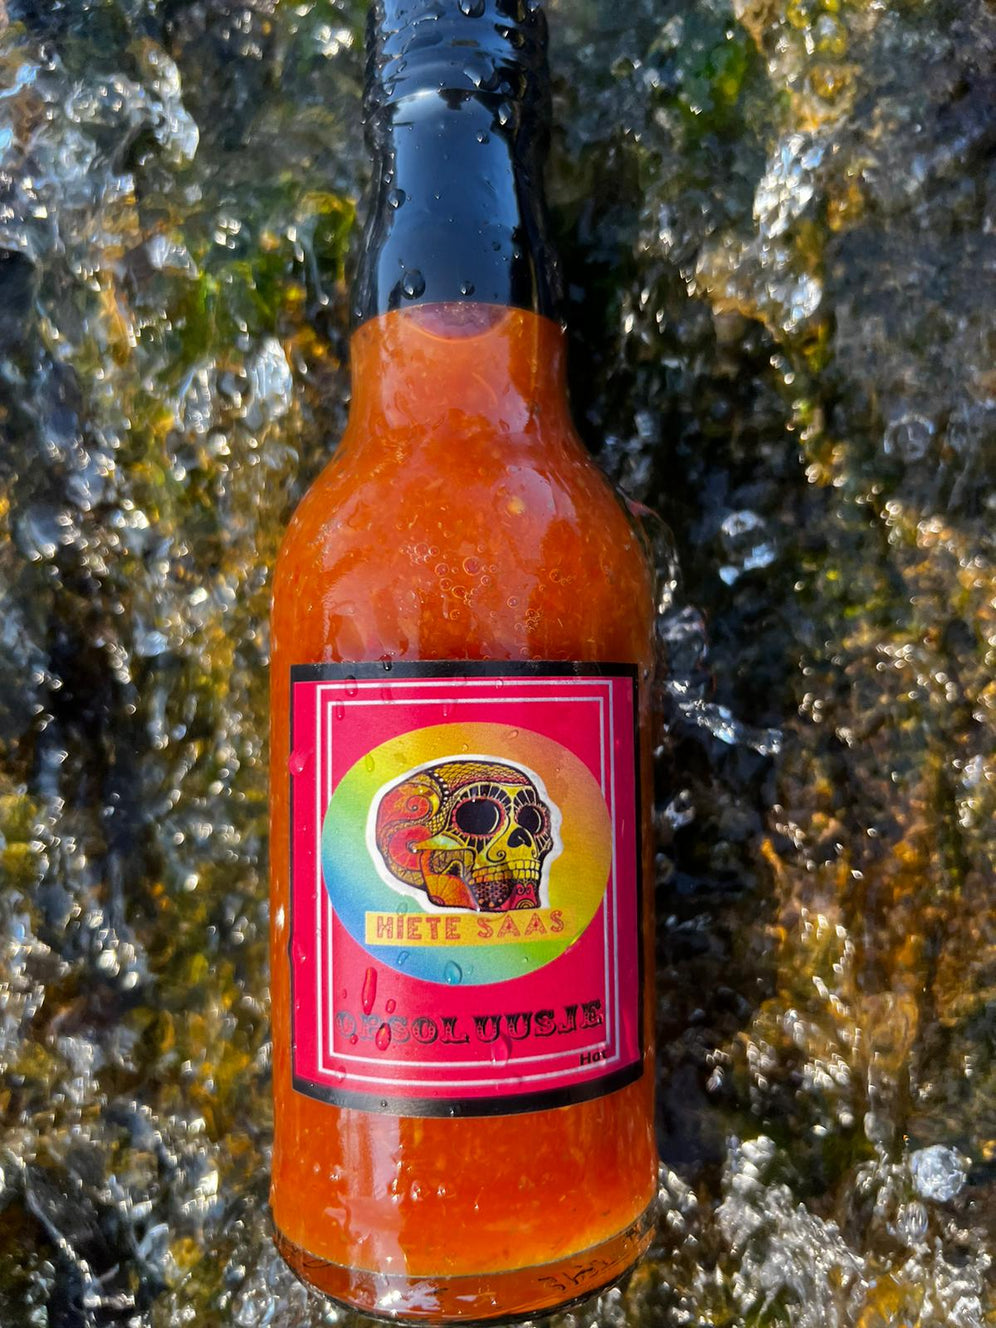 Bouteille de sauce piquante Opsoluusje avec étiquette colorée sur un fond naturel.